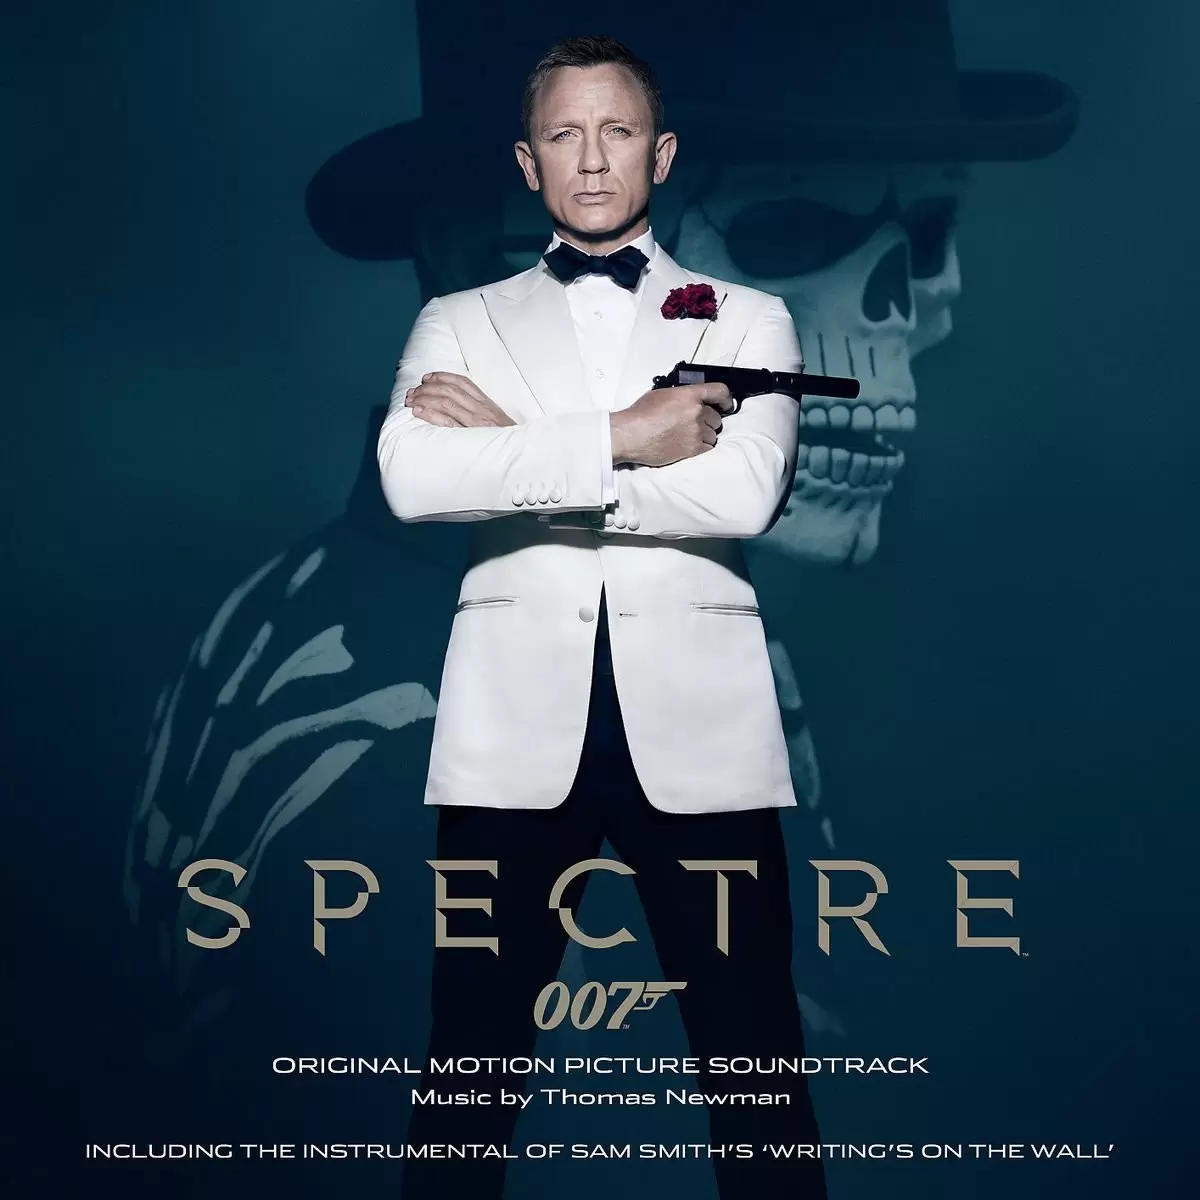 Bande originale de films, jeux vidéos et séries TV - Spectre 007